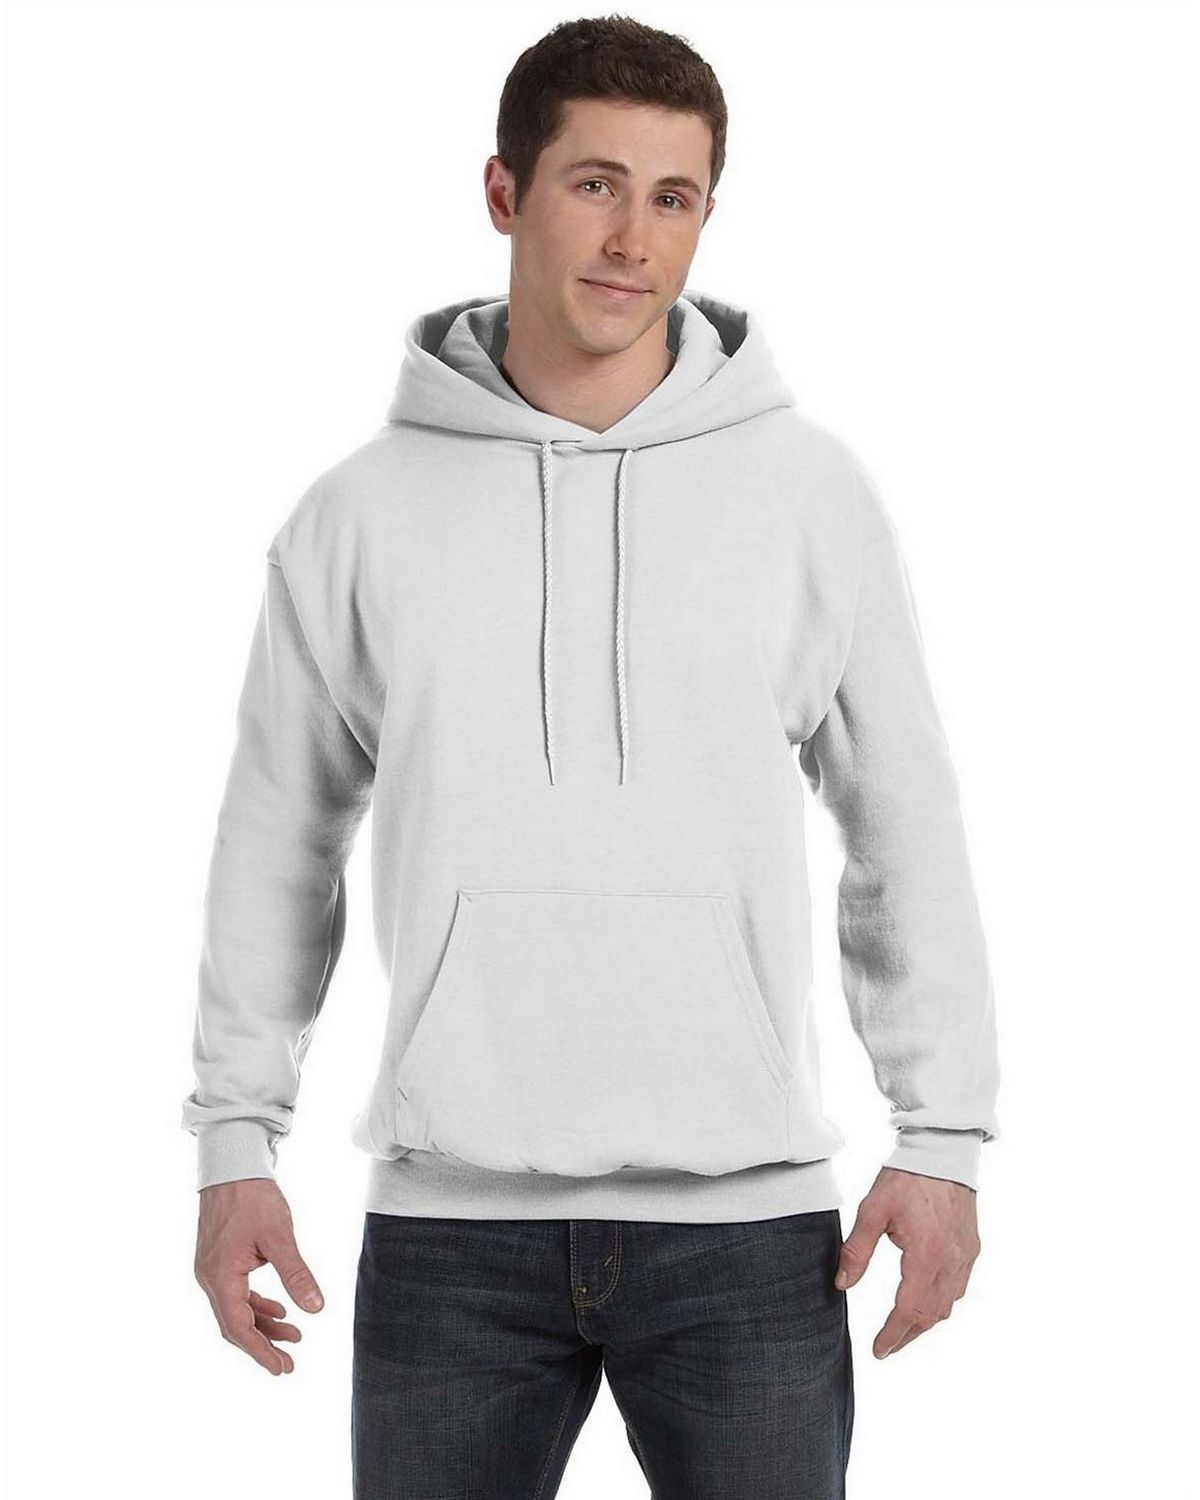 Hanes Hooded Sweatshirt Size Chart